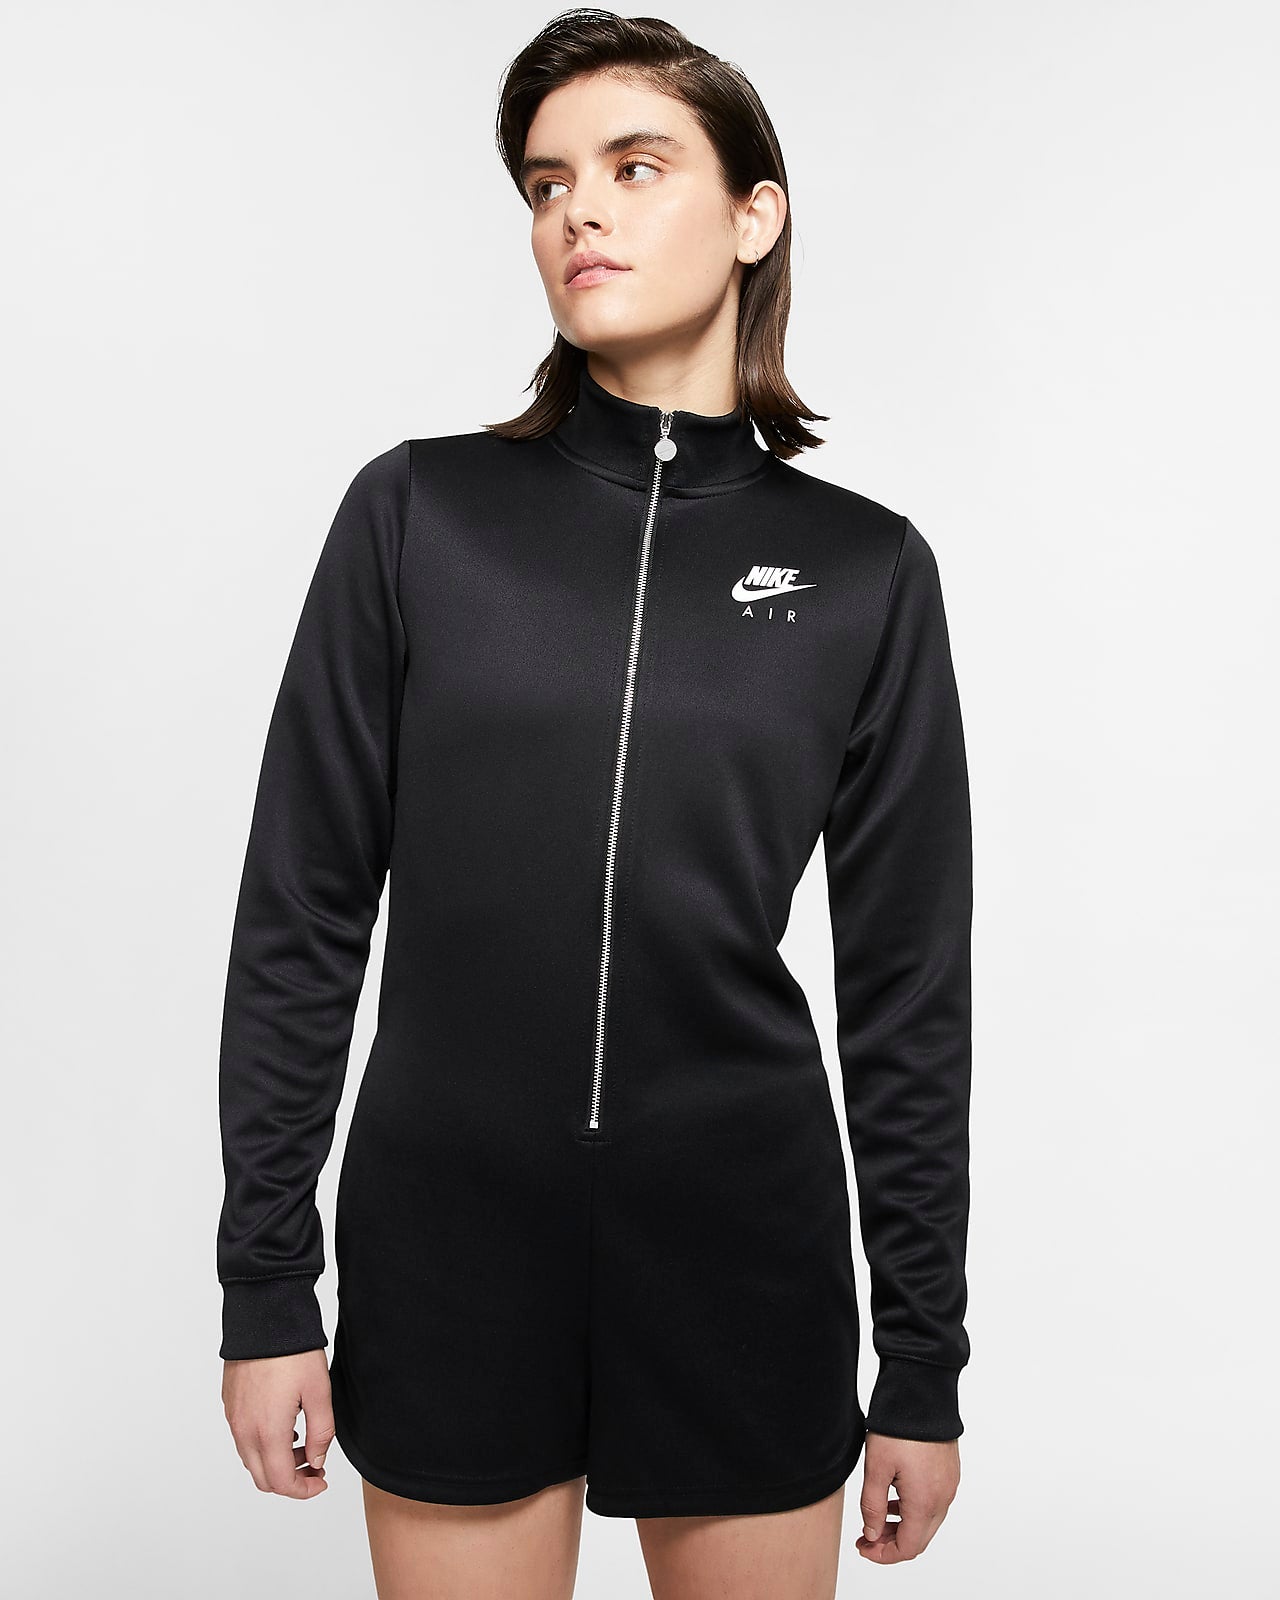 Nike Air Women's – Love it Buy it